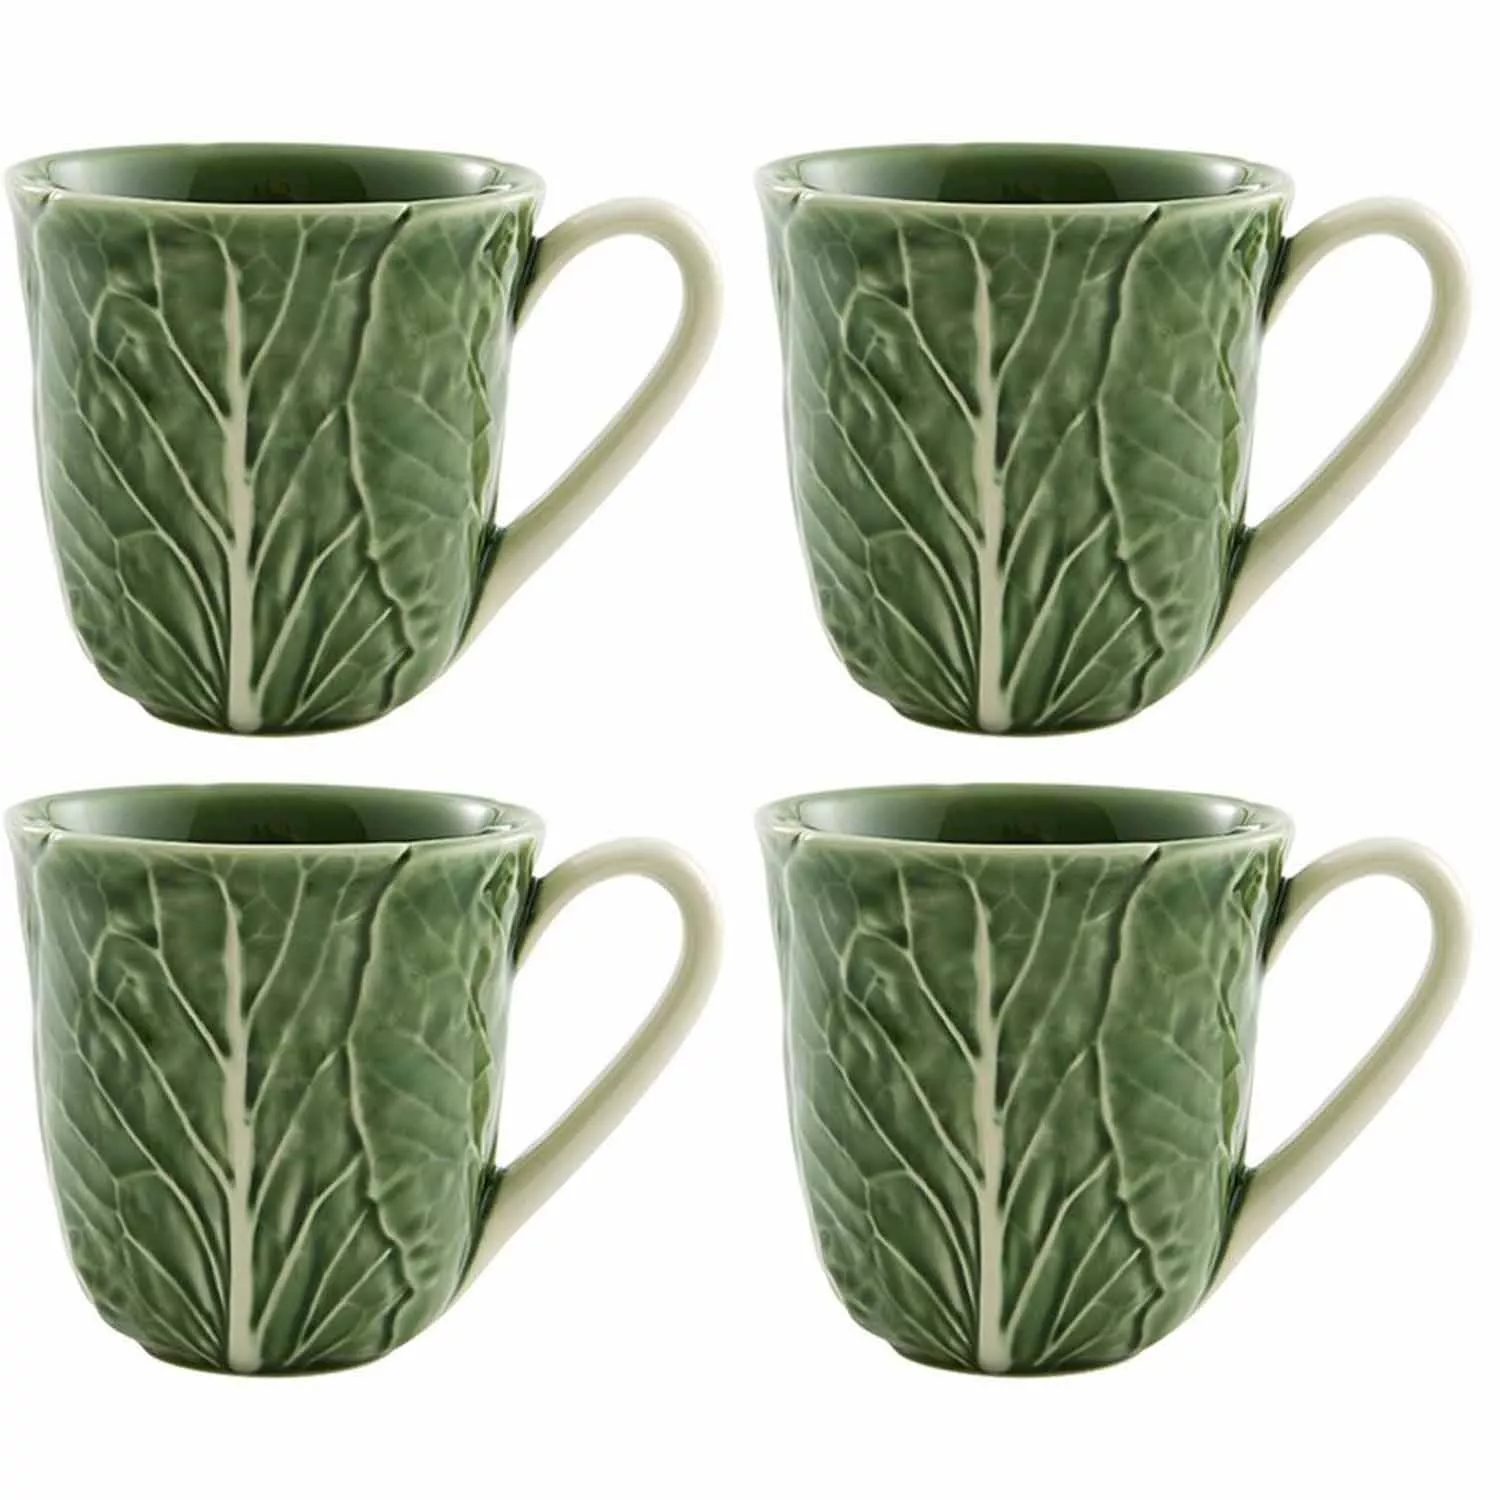 Bordallo Pinheiro Cabbage Green Mugs, Set of 4